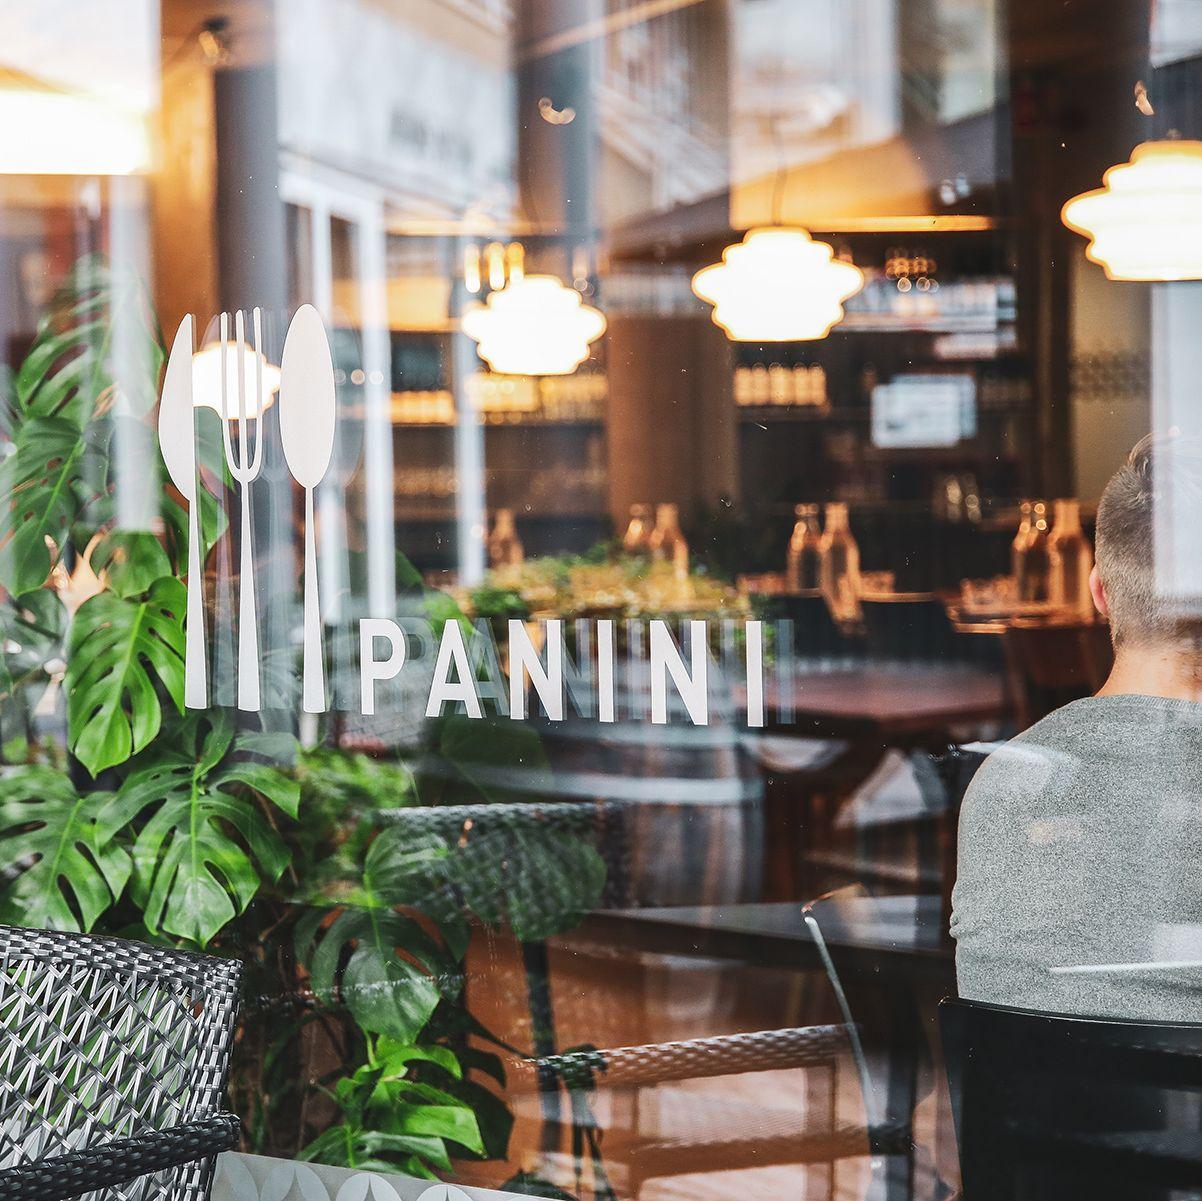 Tittar genom fönstret på Panini, som har namnet på restaurangen på glaset.